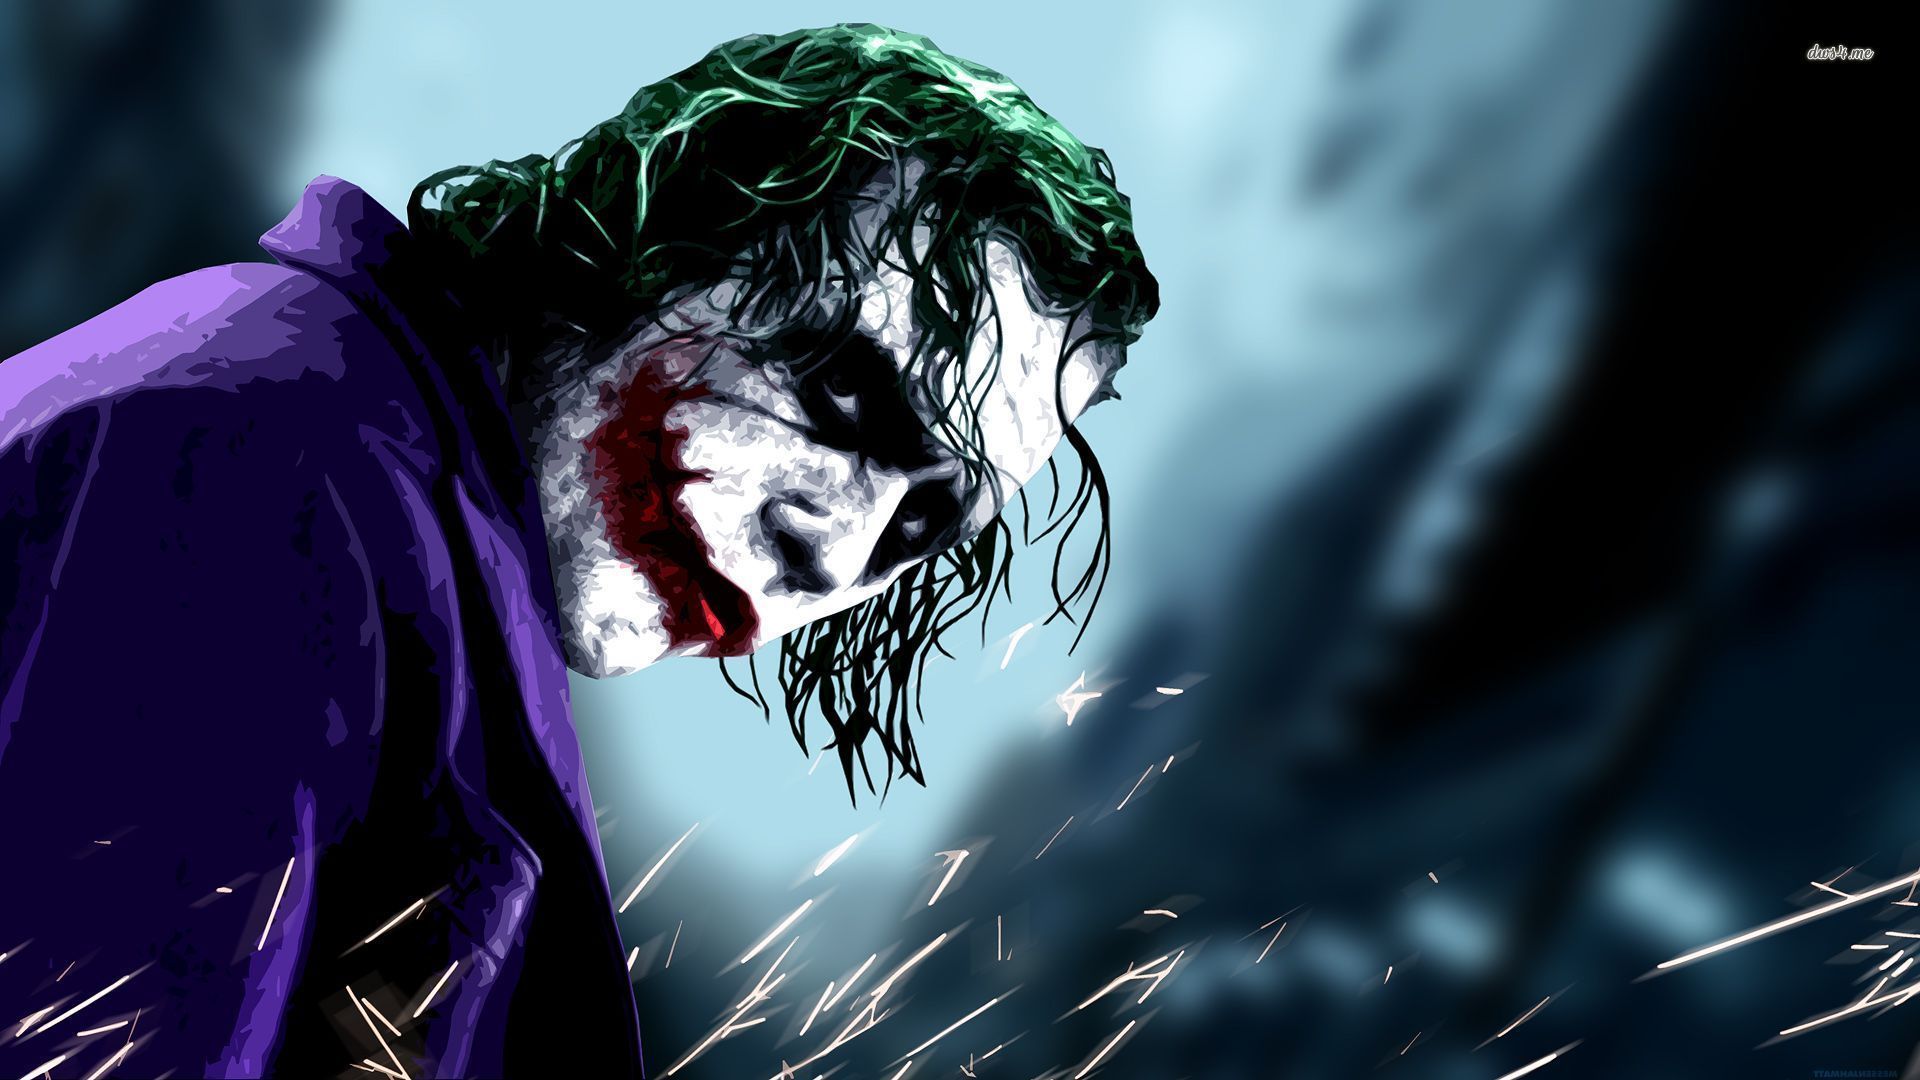 The Joker - The Dark Knight wallpaper - Movie wallpapers -